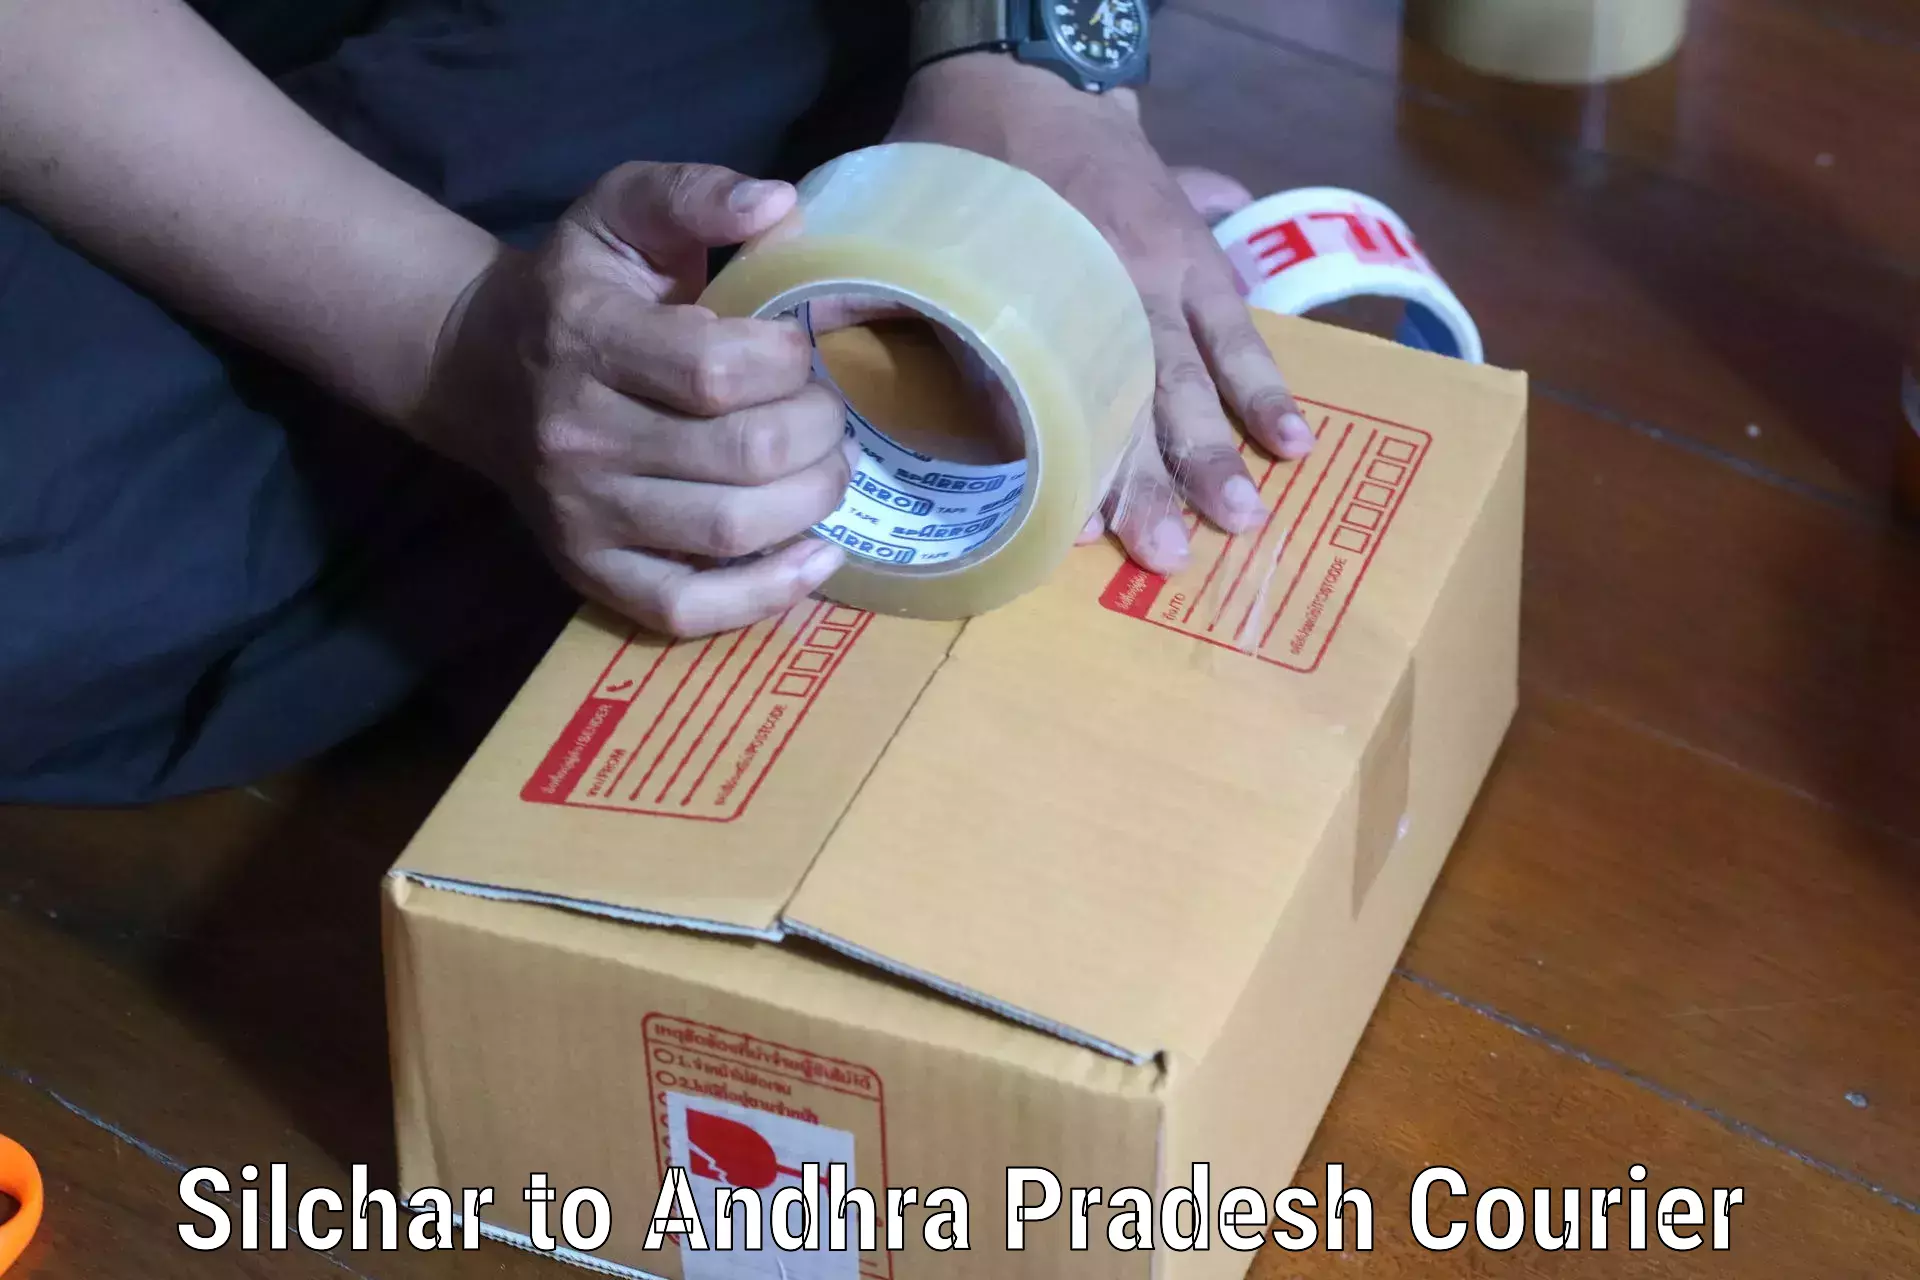 Expedited shipping methods Silchar to Dwaraka Tirumala